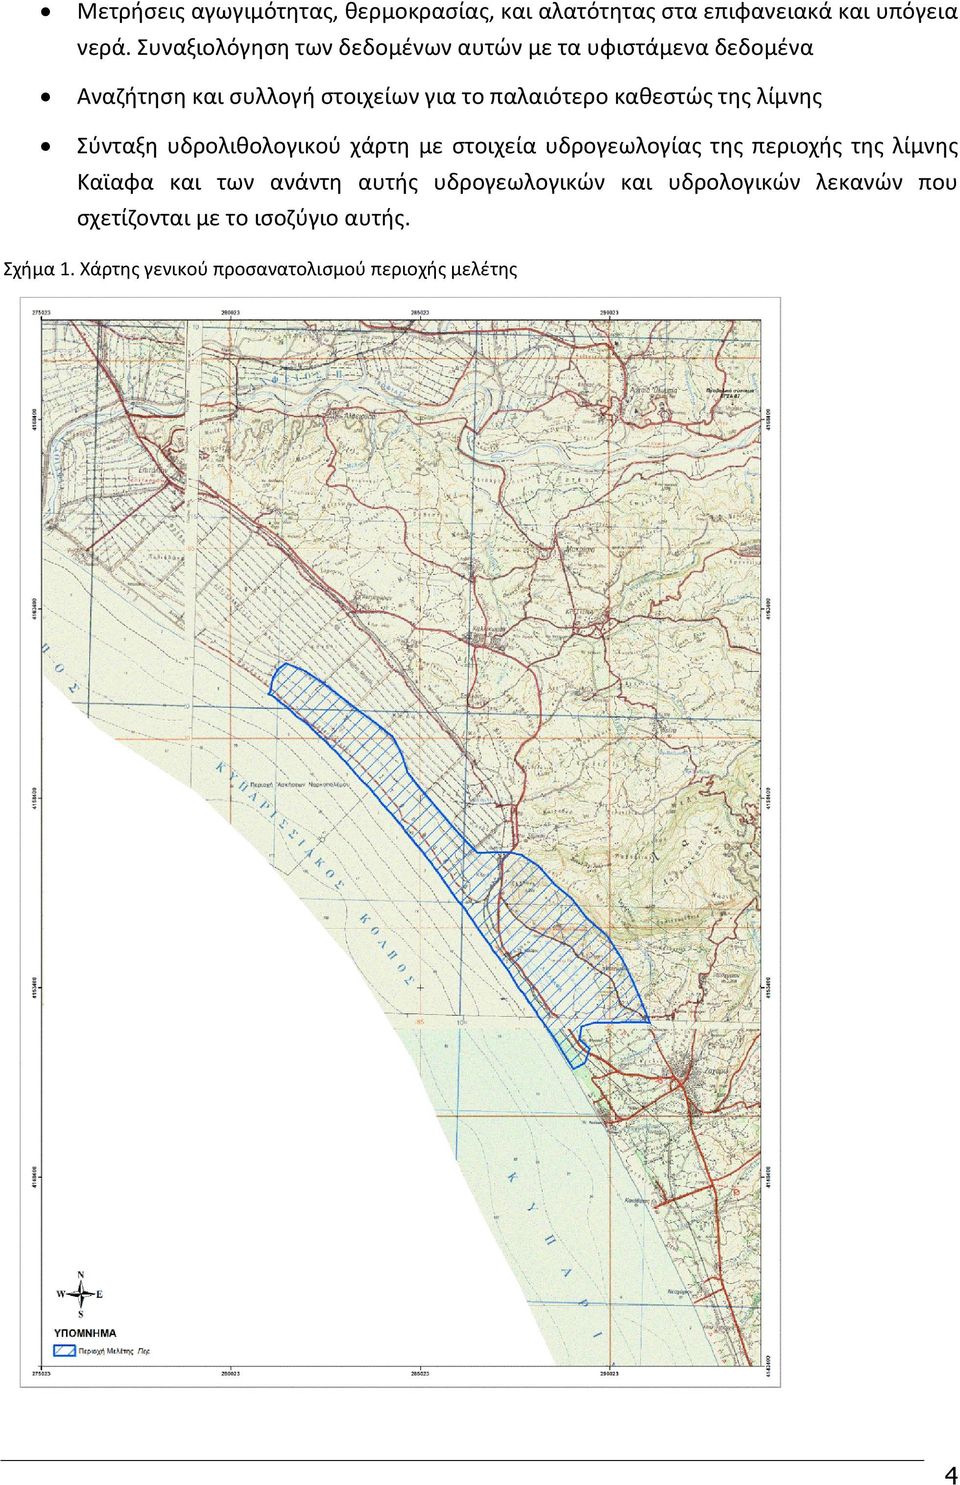 καθεστώς της λίμνης Σύνταξη υδρολιθολογικού χάρτη με στοιχεία υδρογεωλογίας της περιοχής της λίμνης Καϊαφα και των